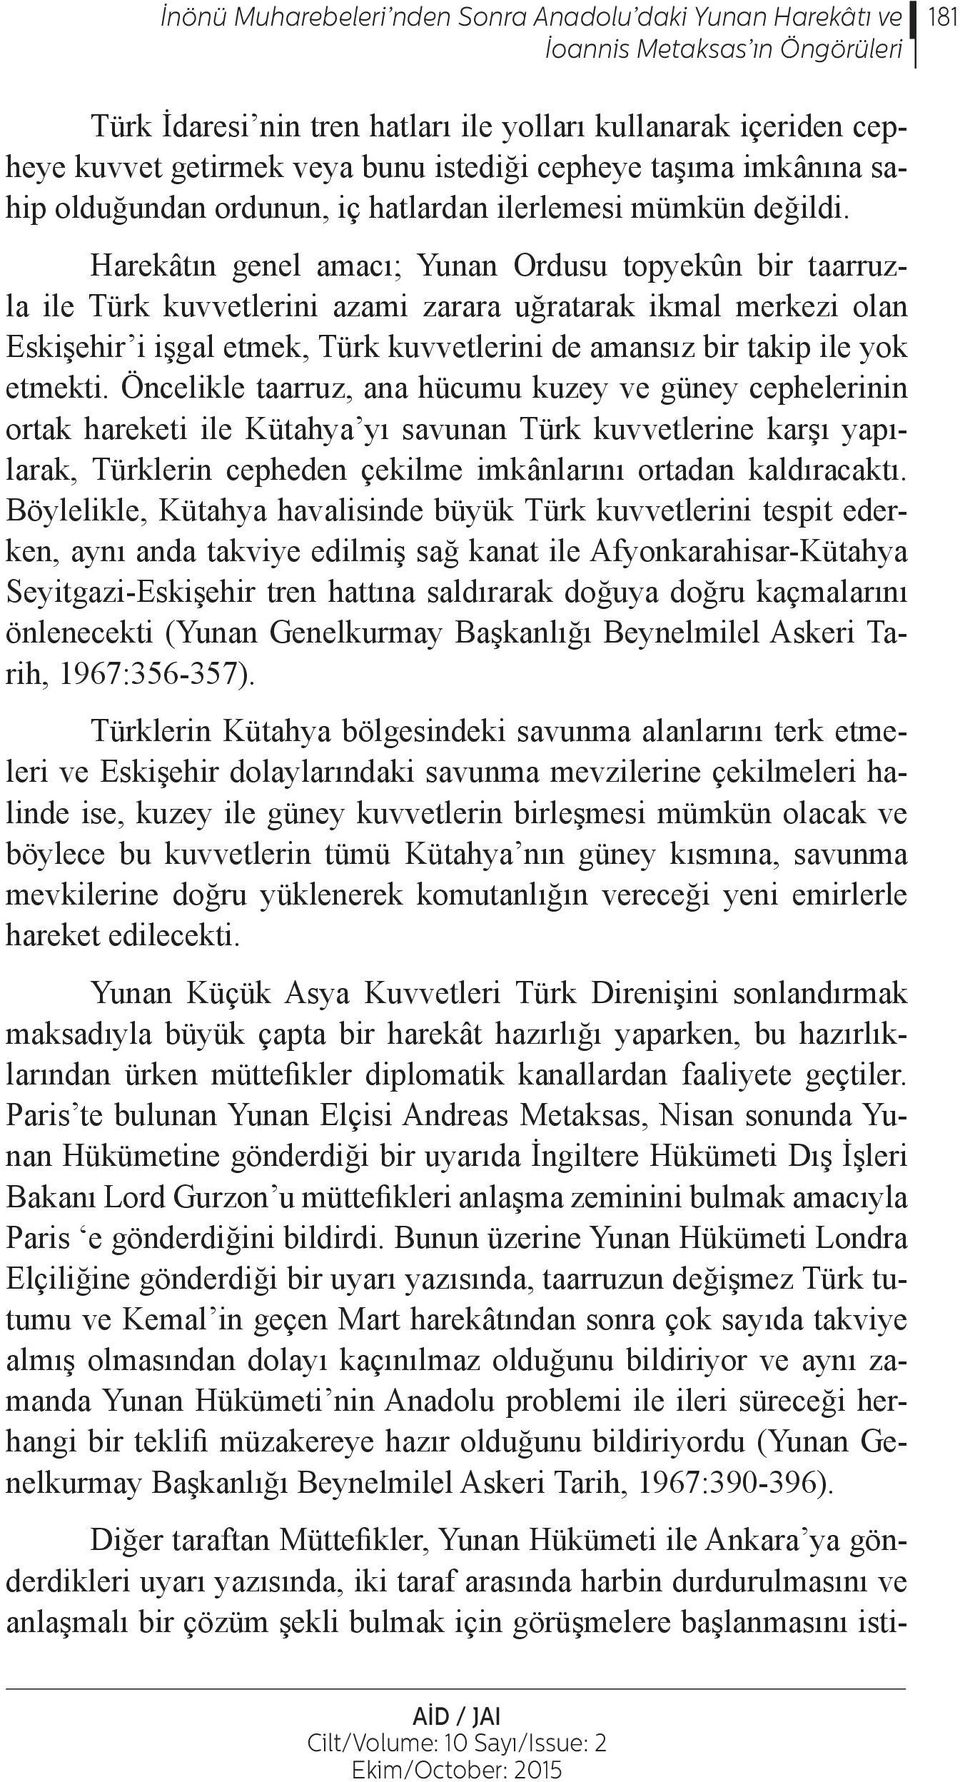 Harekâtın genel amacı; Yunan Ordusu topyekûn bir taarruzla ile Türk kuvvetlerini azami zarara uğratarak ikmal merkezi olan Eskişehir i işgal etmek, Türk kuvvetlerini de amansız bir takip ile yok